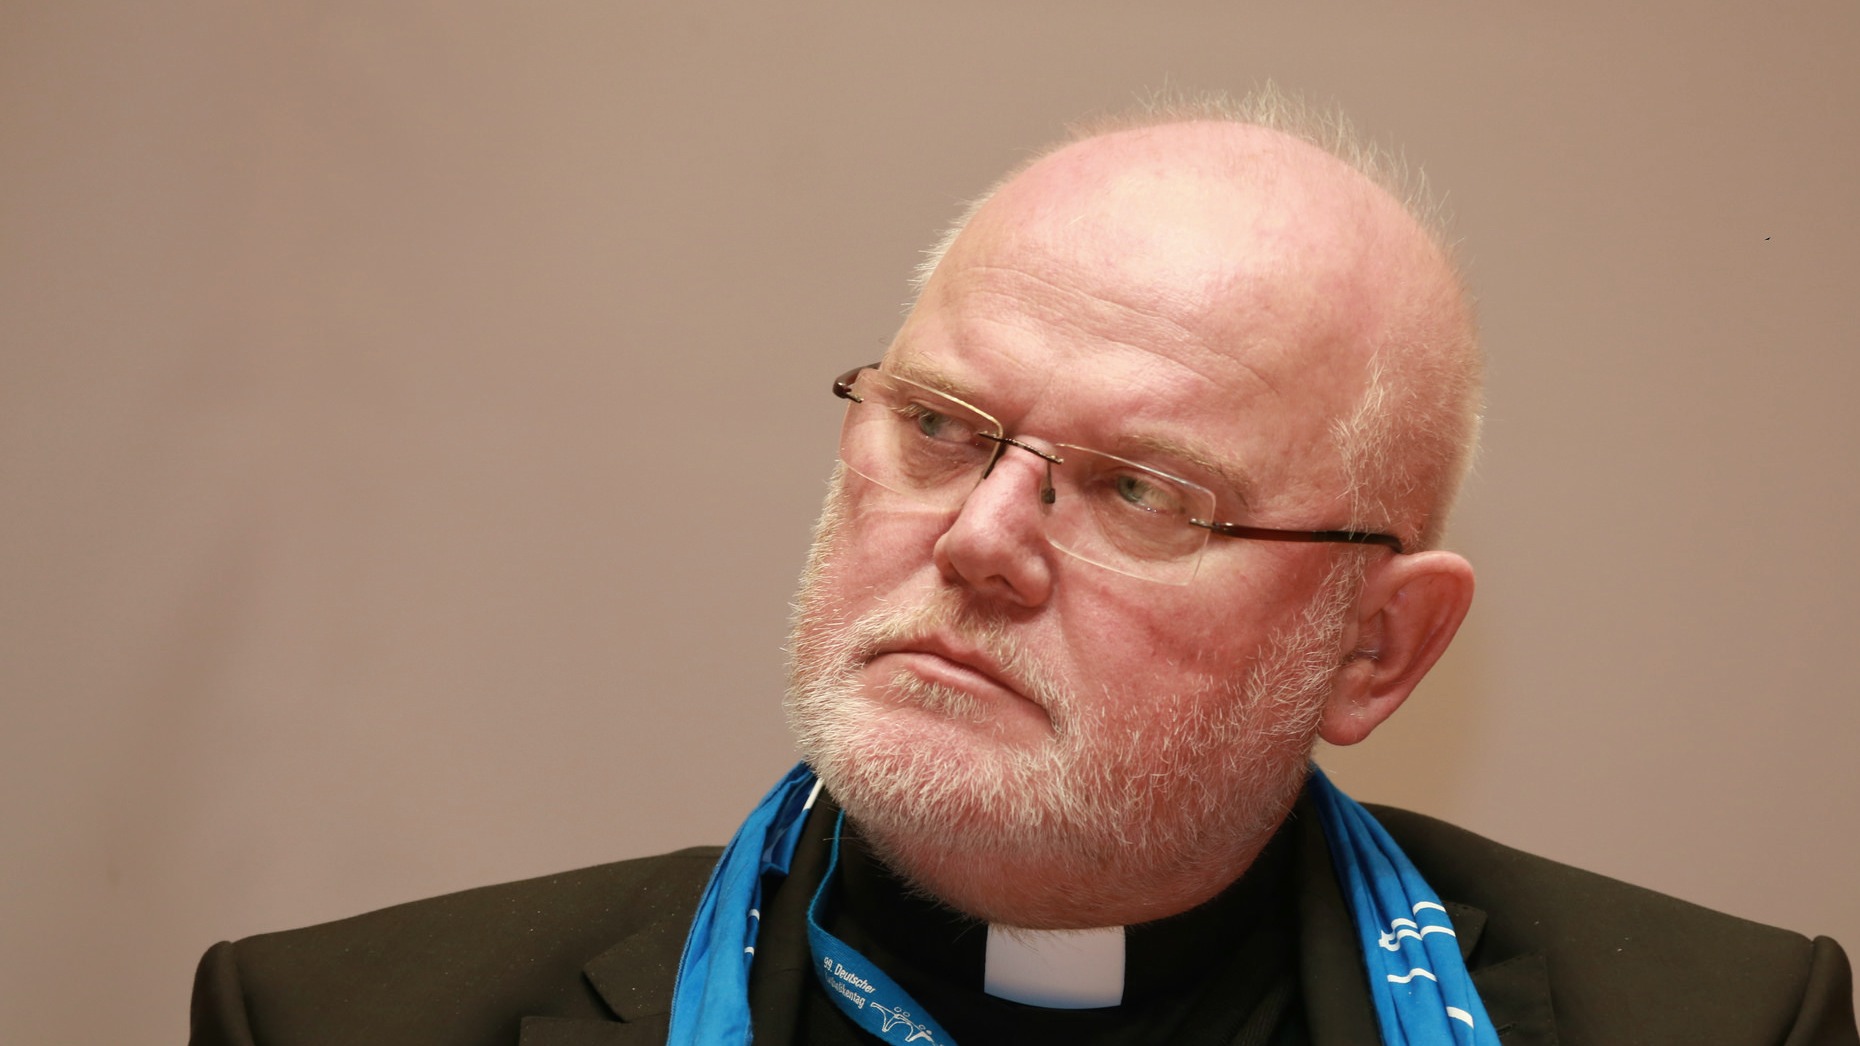 Pour le cardinal Reinhard Marx, le célibat ne convient pas à certains prêtres | © Metropolico.org/Flickr/CC BY-SA 2.0